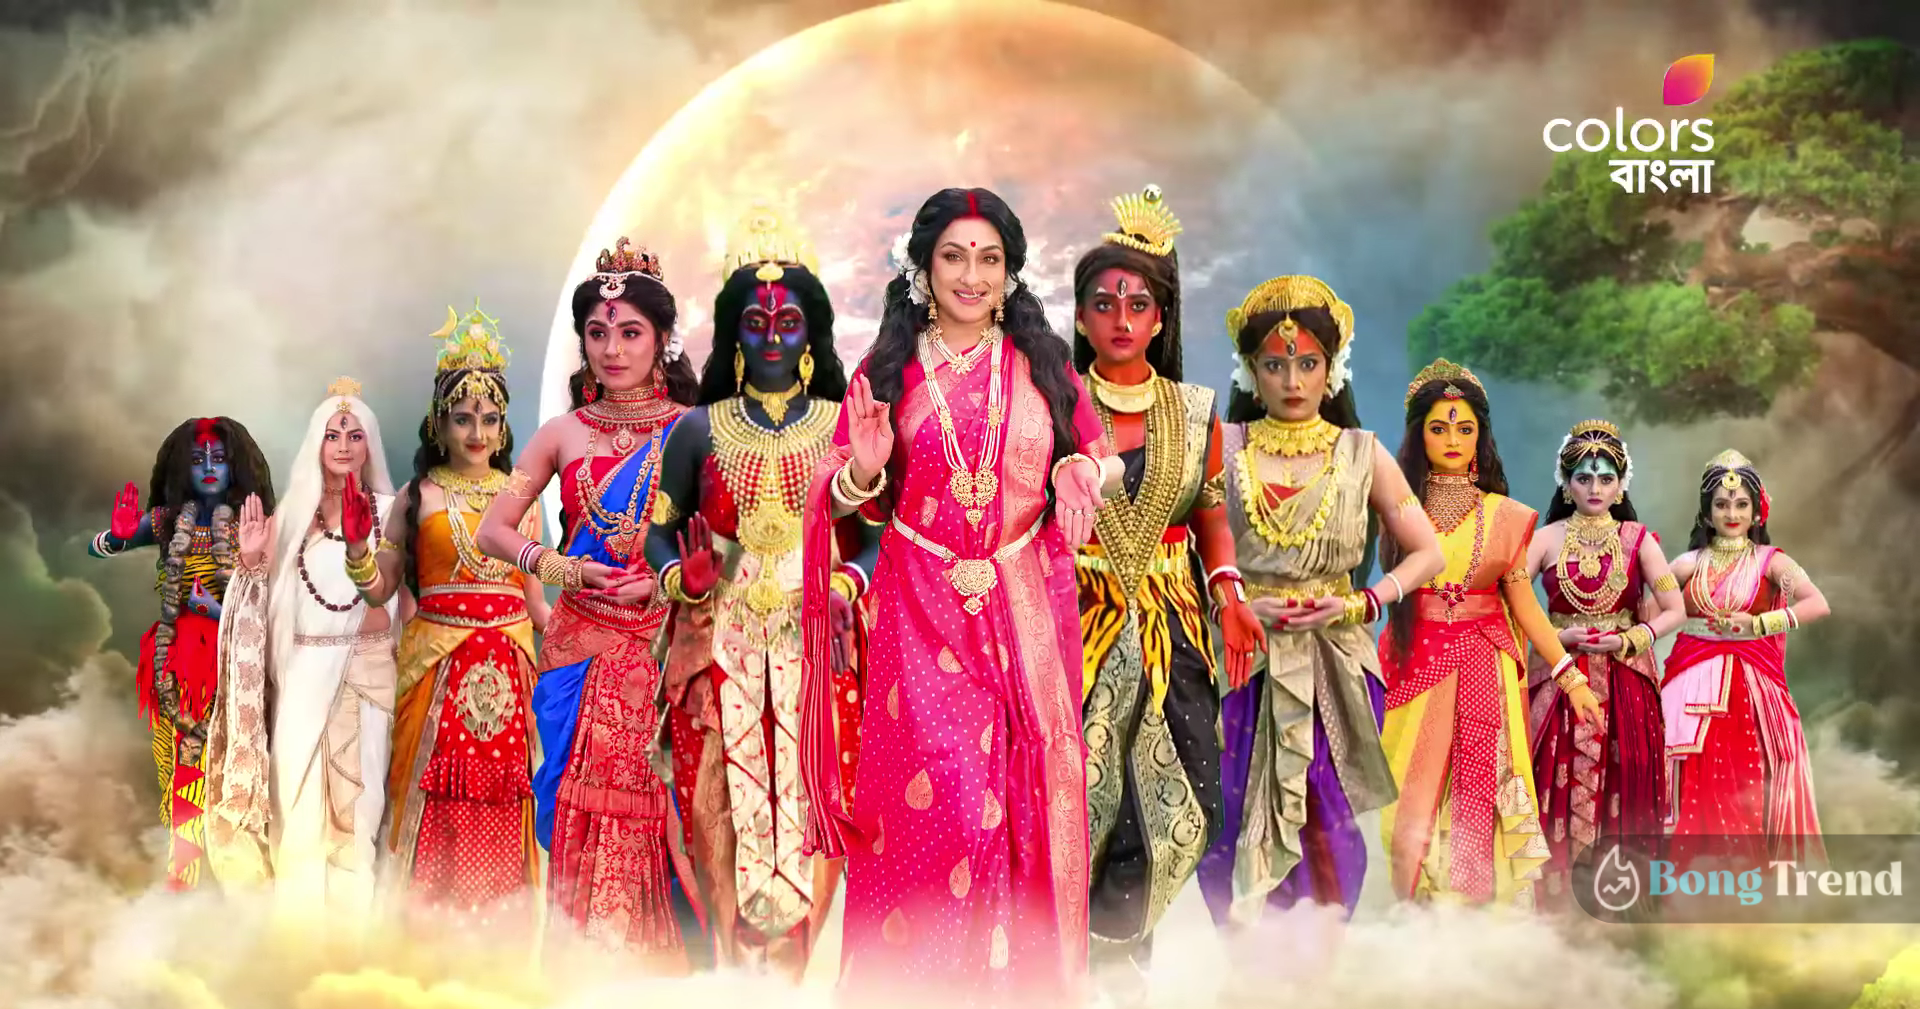 শ্রুতি দাস,Shruti Das,মা কালী,Ma Kali,মেকআপ,Make Up,ভিডিও,Video,ভাইরাল,Viral